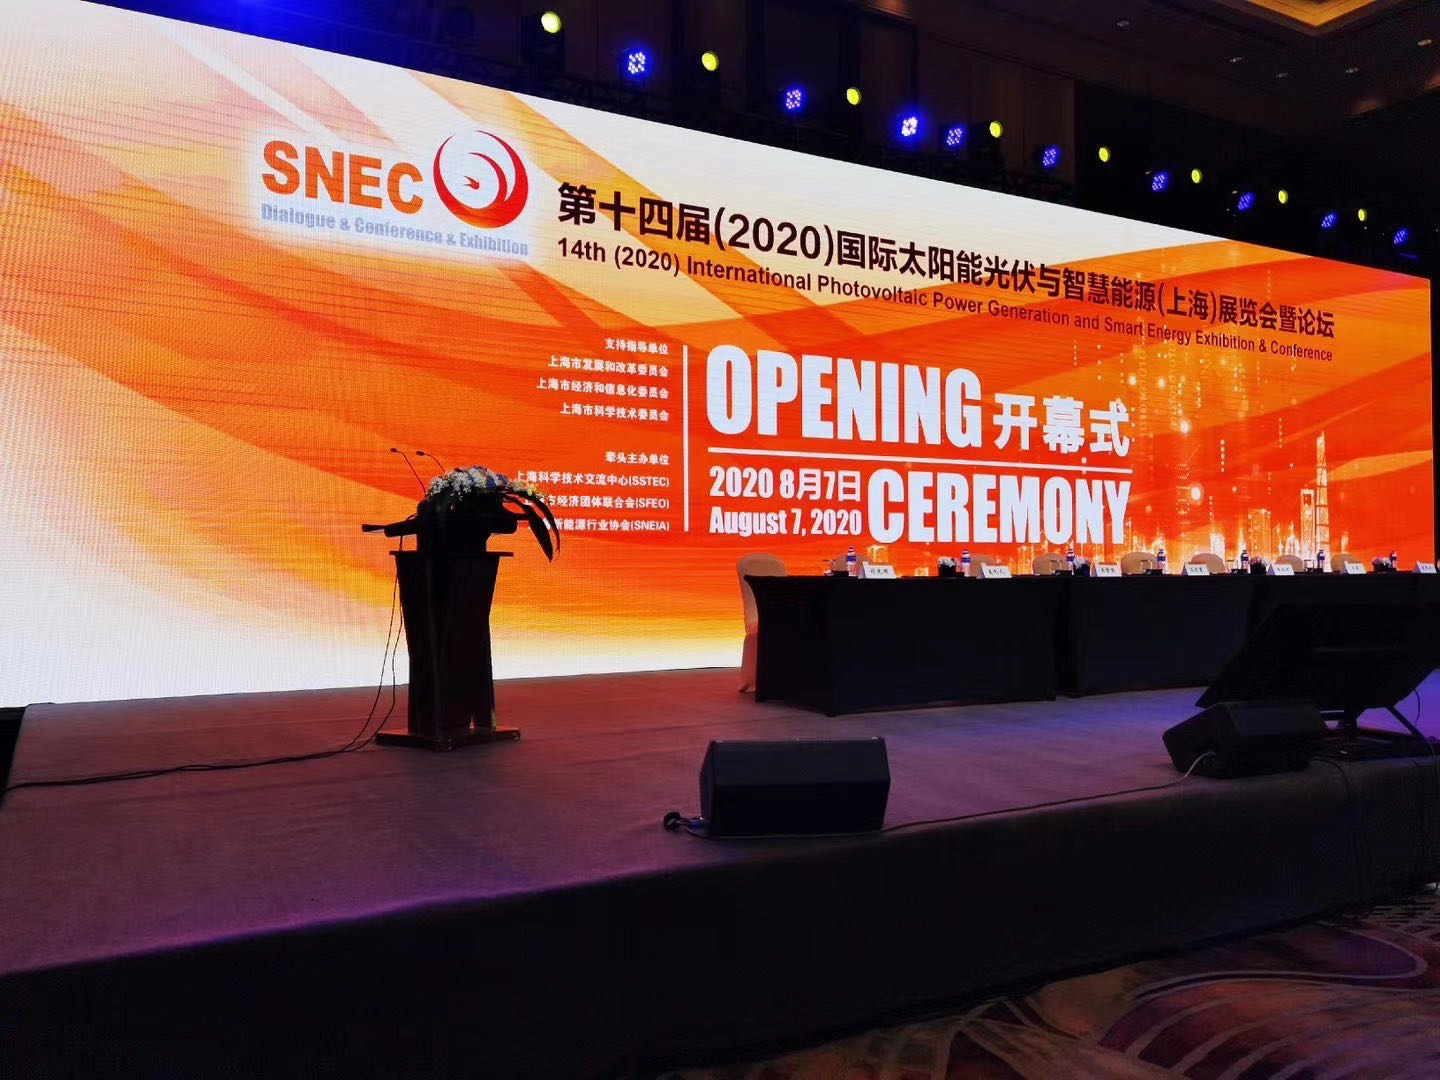 【延期举办通知】SNEC*五届(2022)囯际氢能与燃料电池技术和装备及应用(上海)大会暨展览会